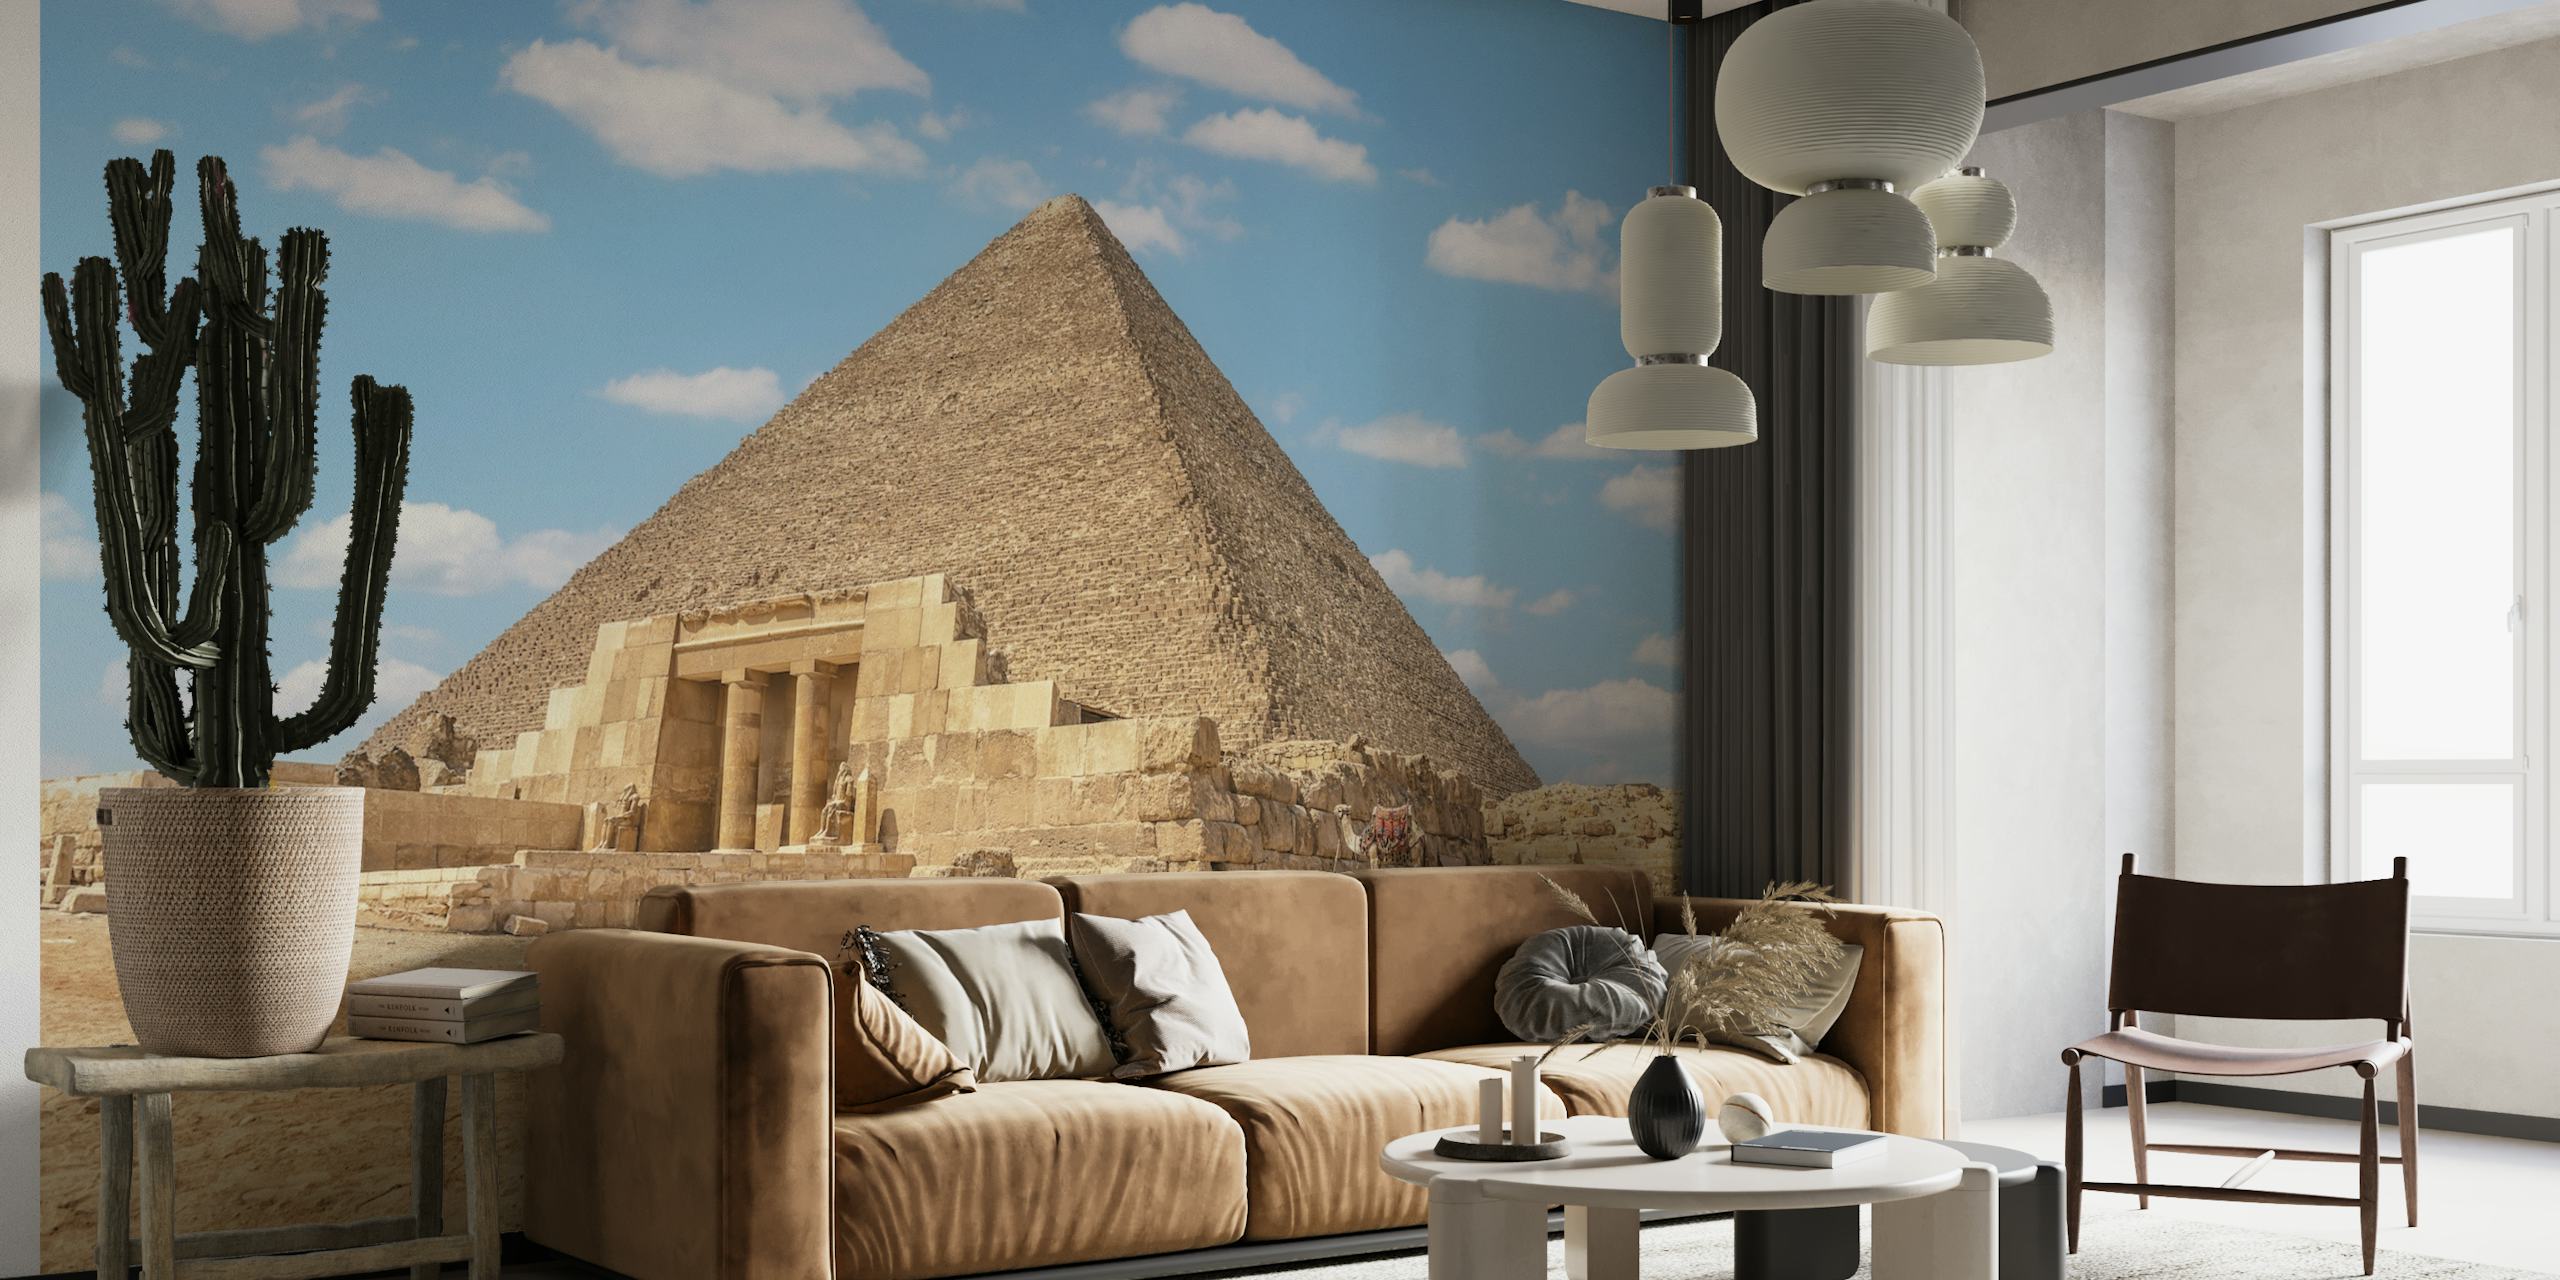 Muurschildering Grote Piramide met de afbeelding van de oude Egyptische piramide onder een heldere hemel op happywall.com